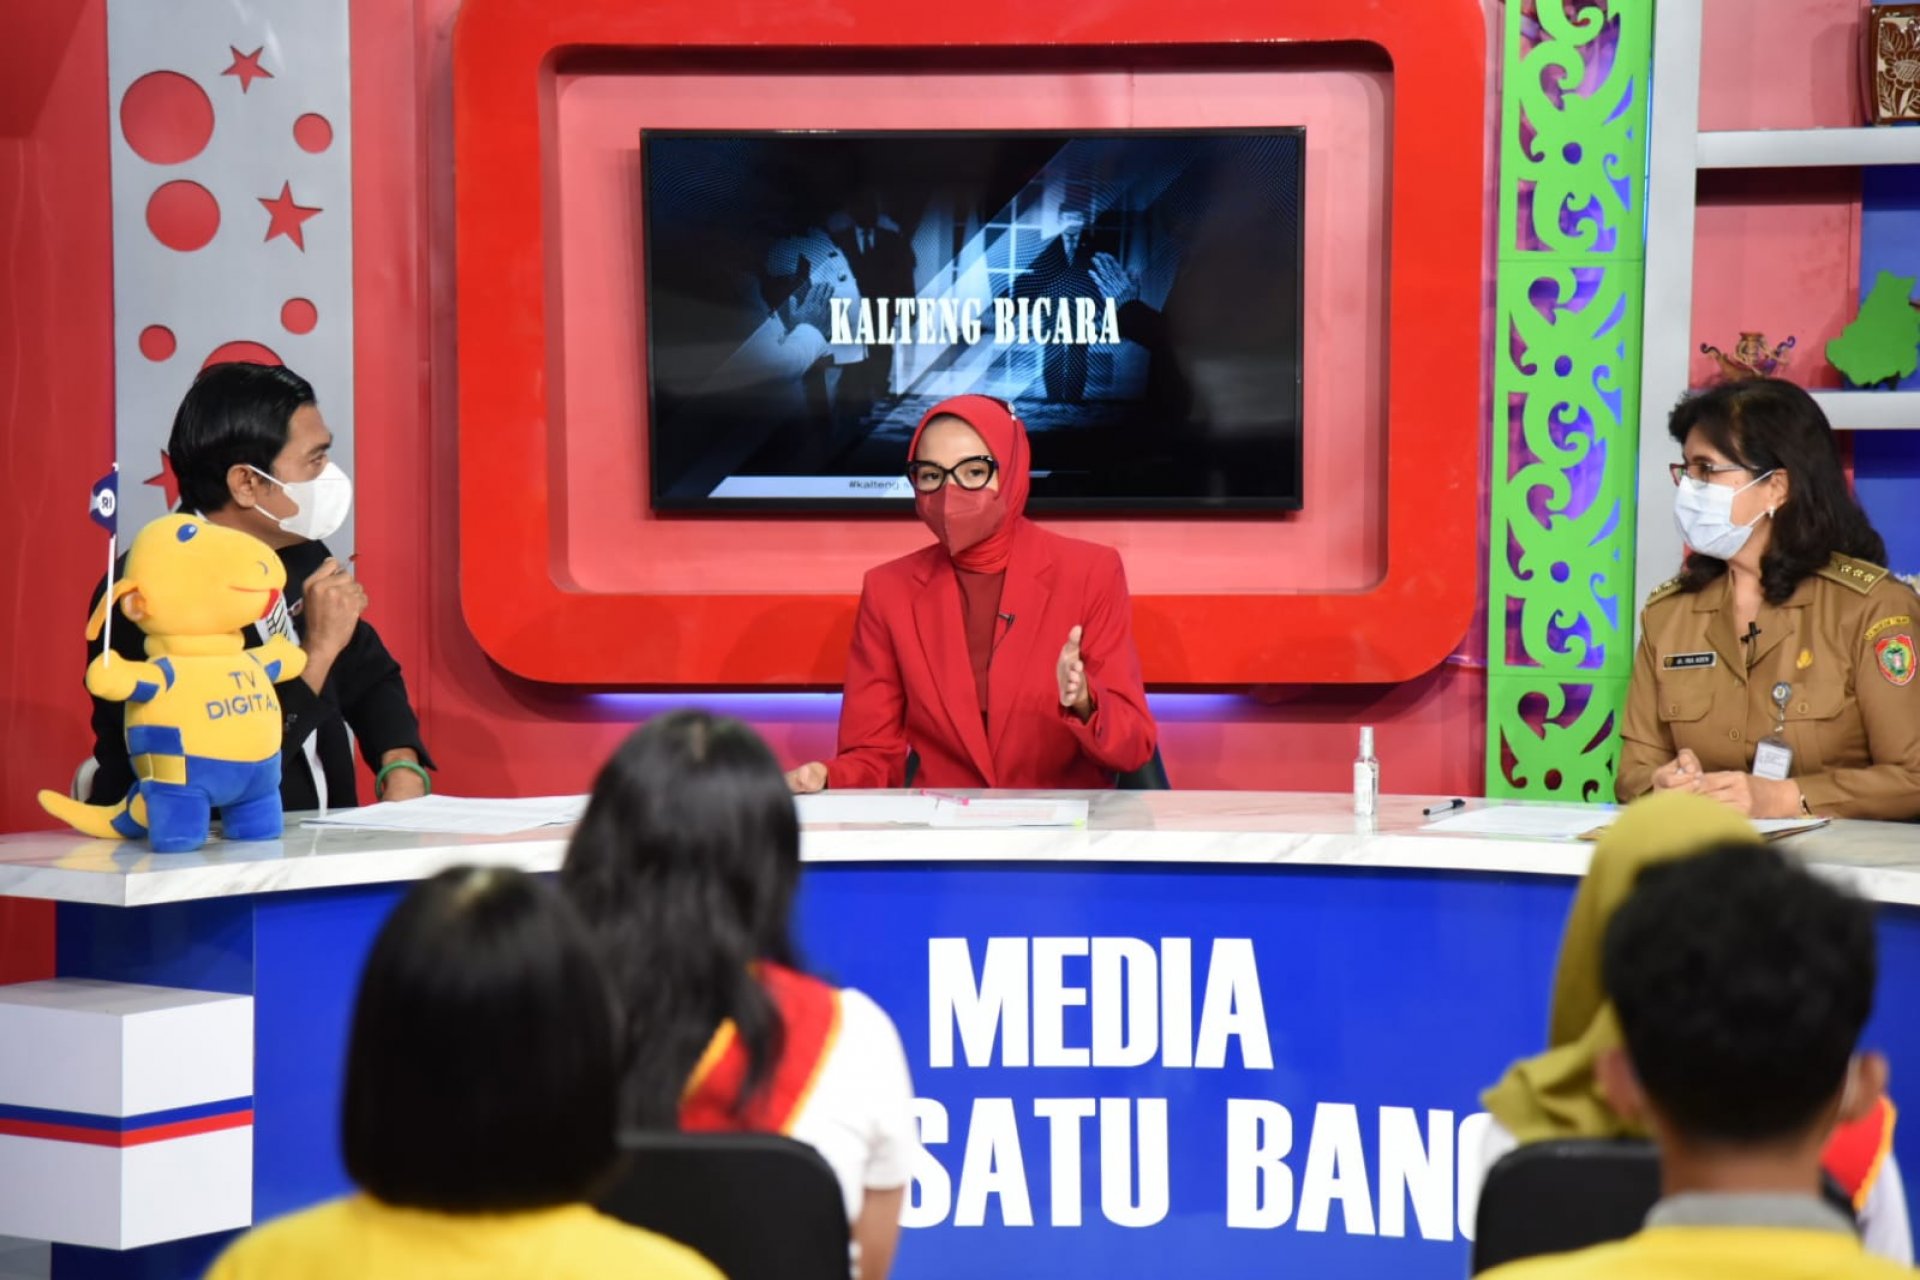 Bunda Forum Anak Daerah Ivo Sugianto Sabran Jadi Narasumber Dialog TVRI Kalteng Bicara